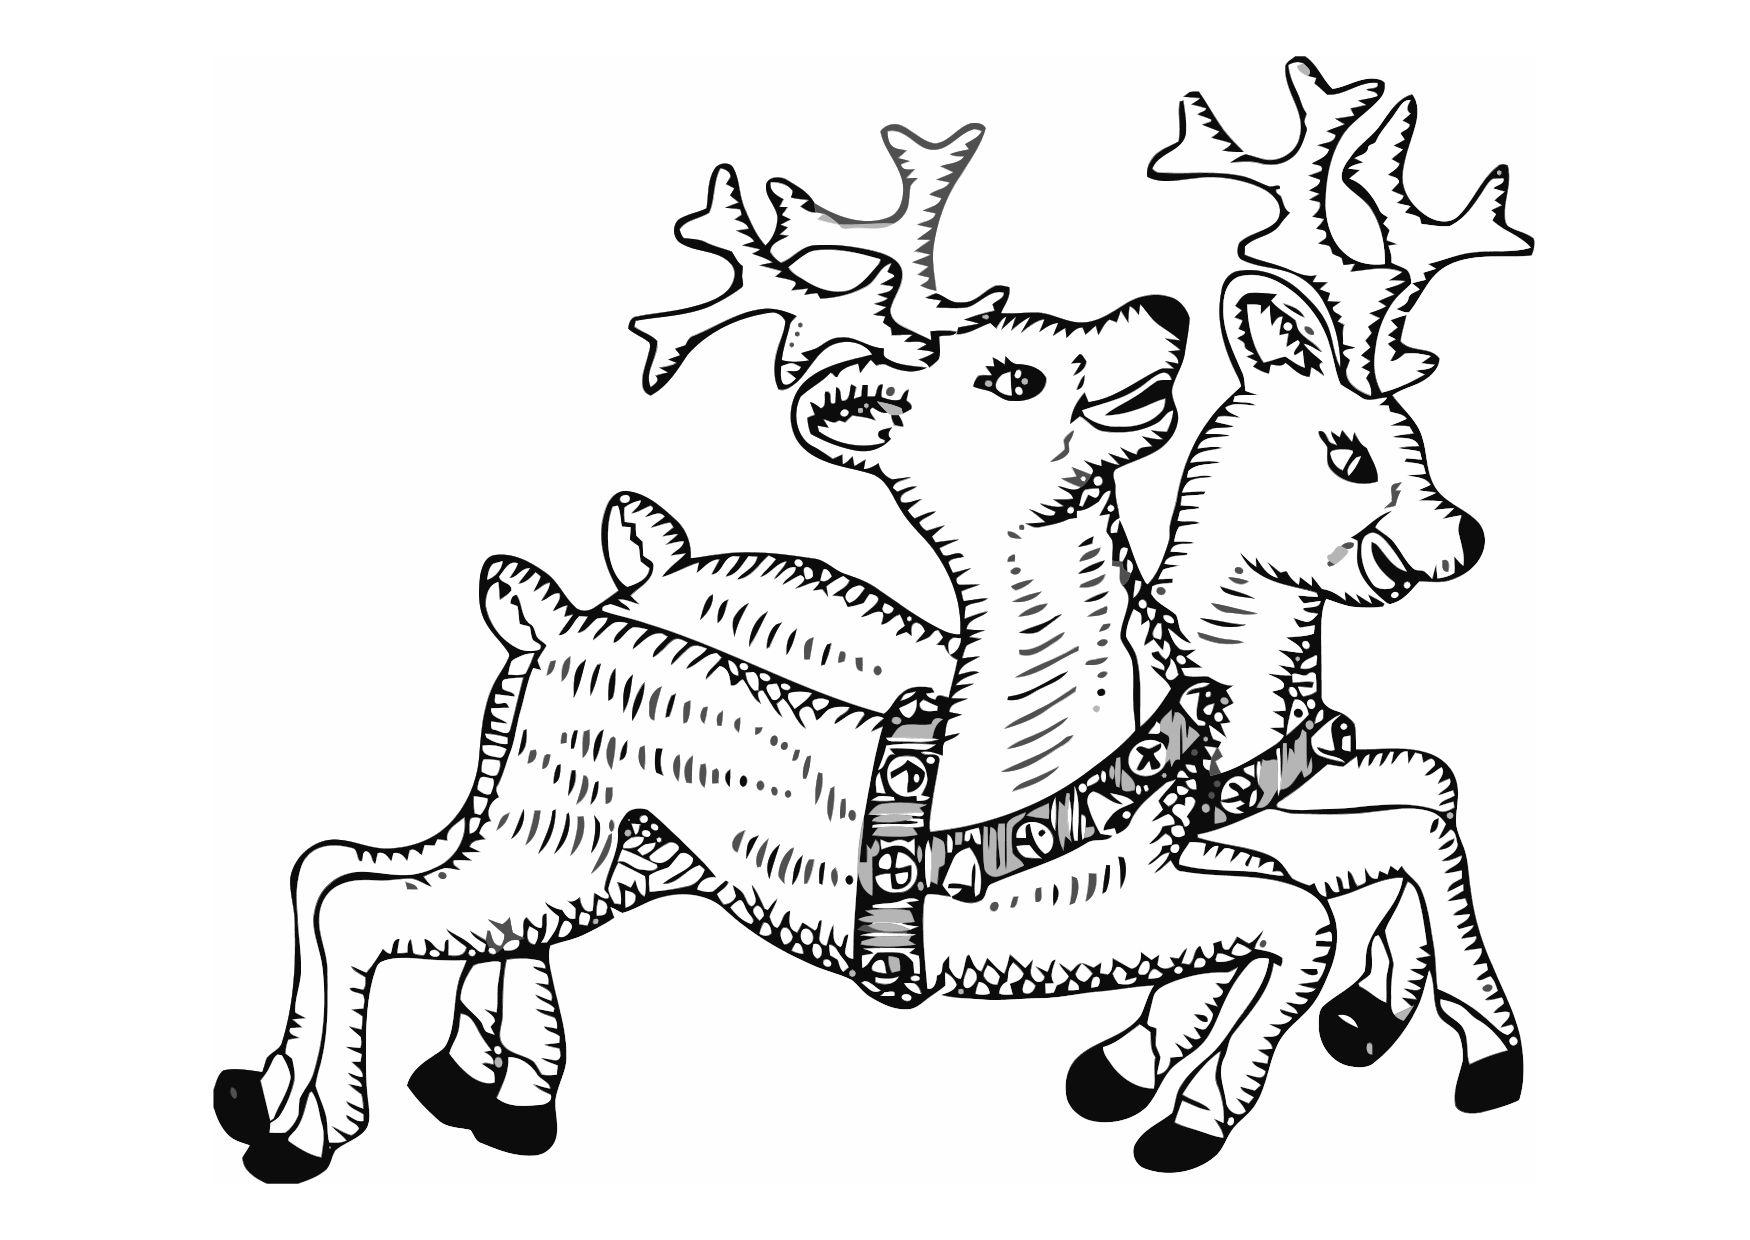 Coloring page reindeer